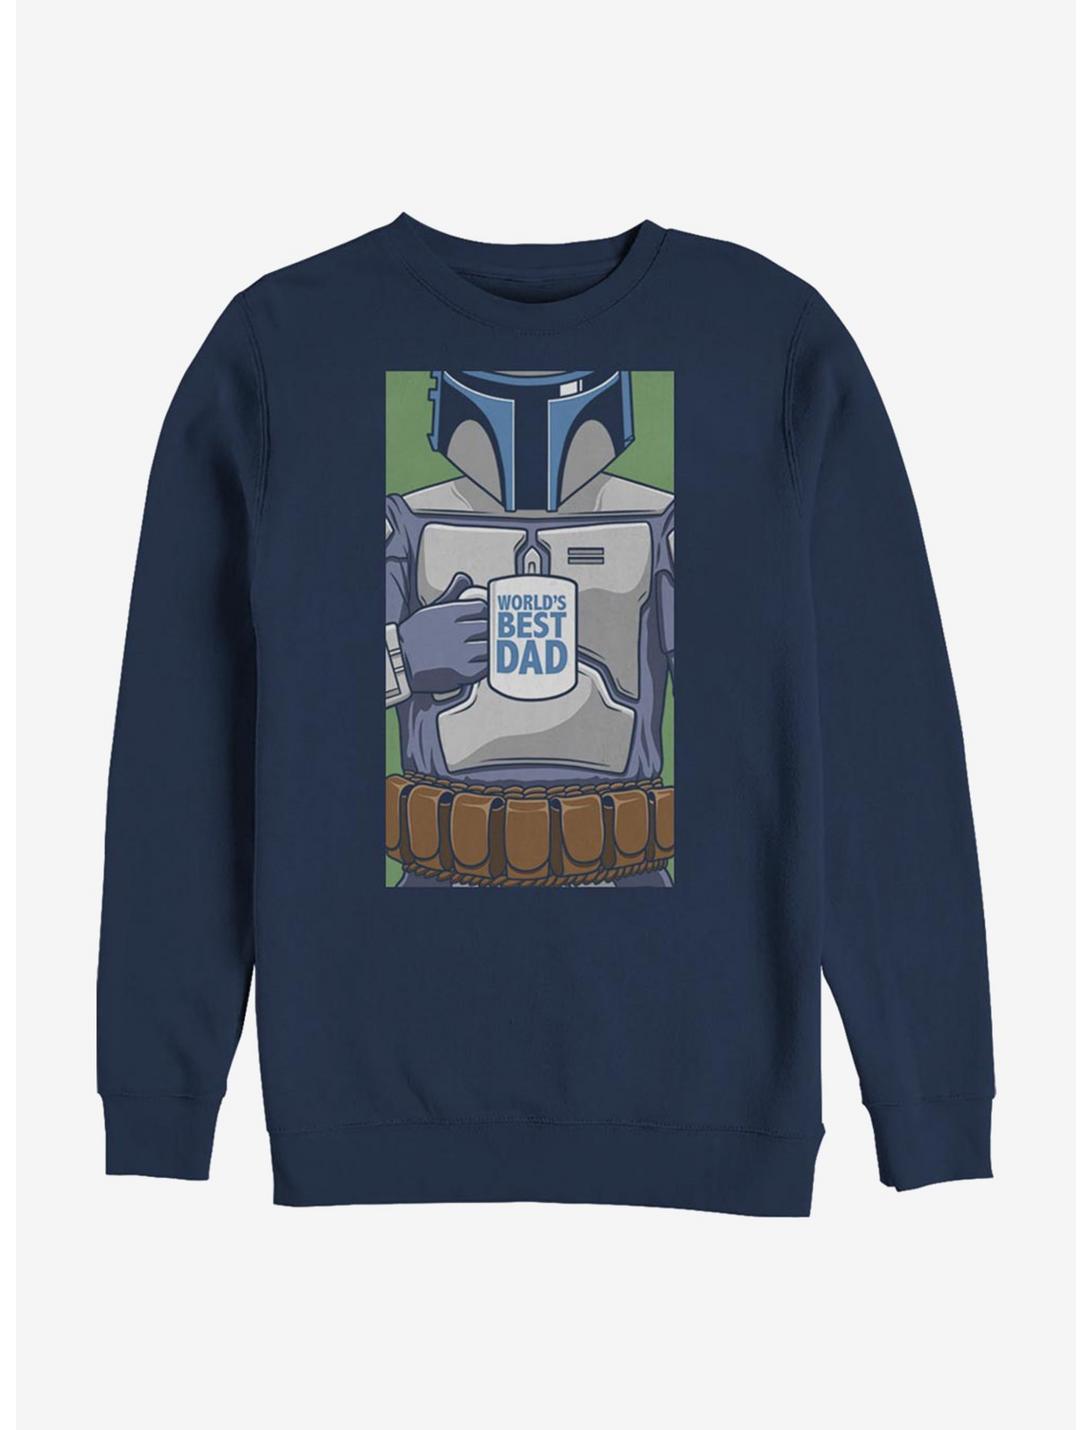 Star Wars World's Best Dad Sweatshirt, NAVY, hi-res